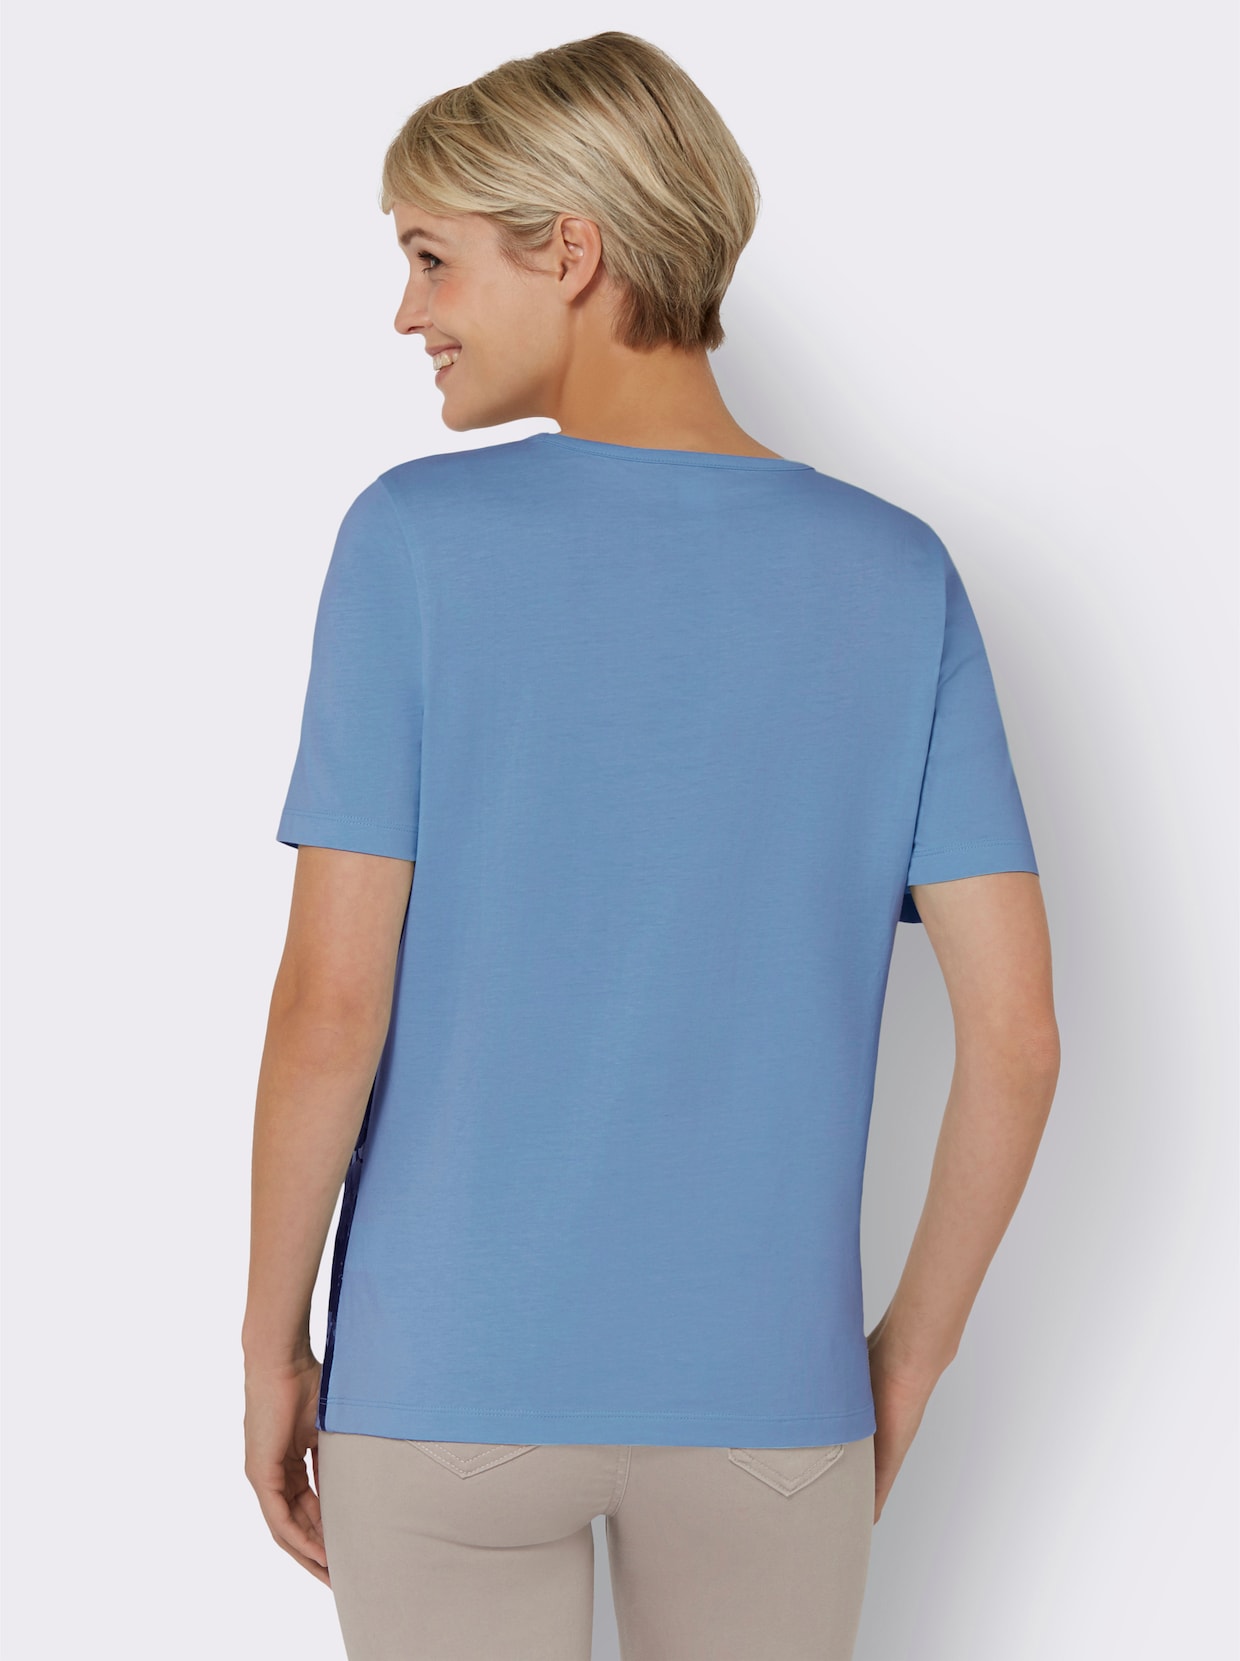 Tričko s krátkým rukávem - nebesky modrá-potisk